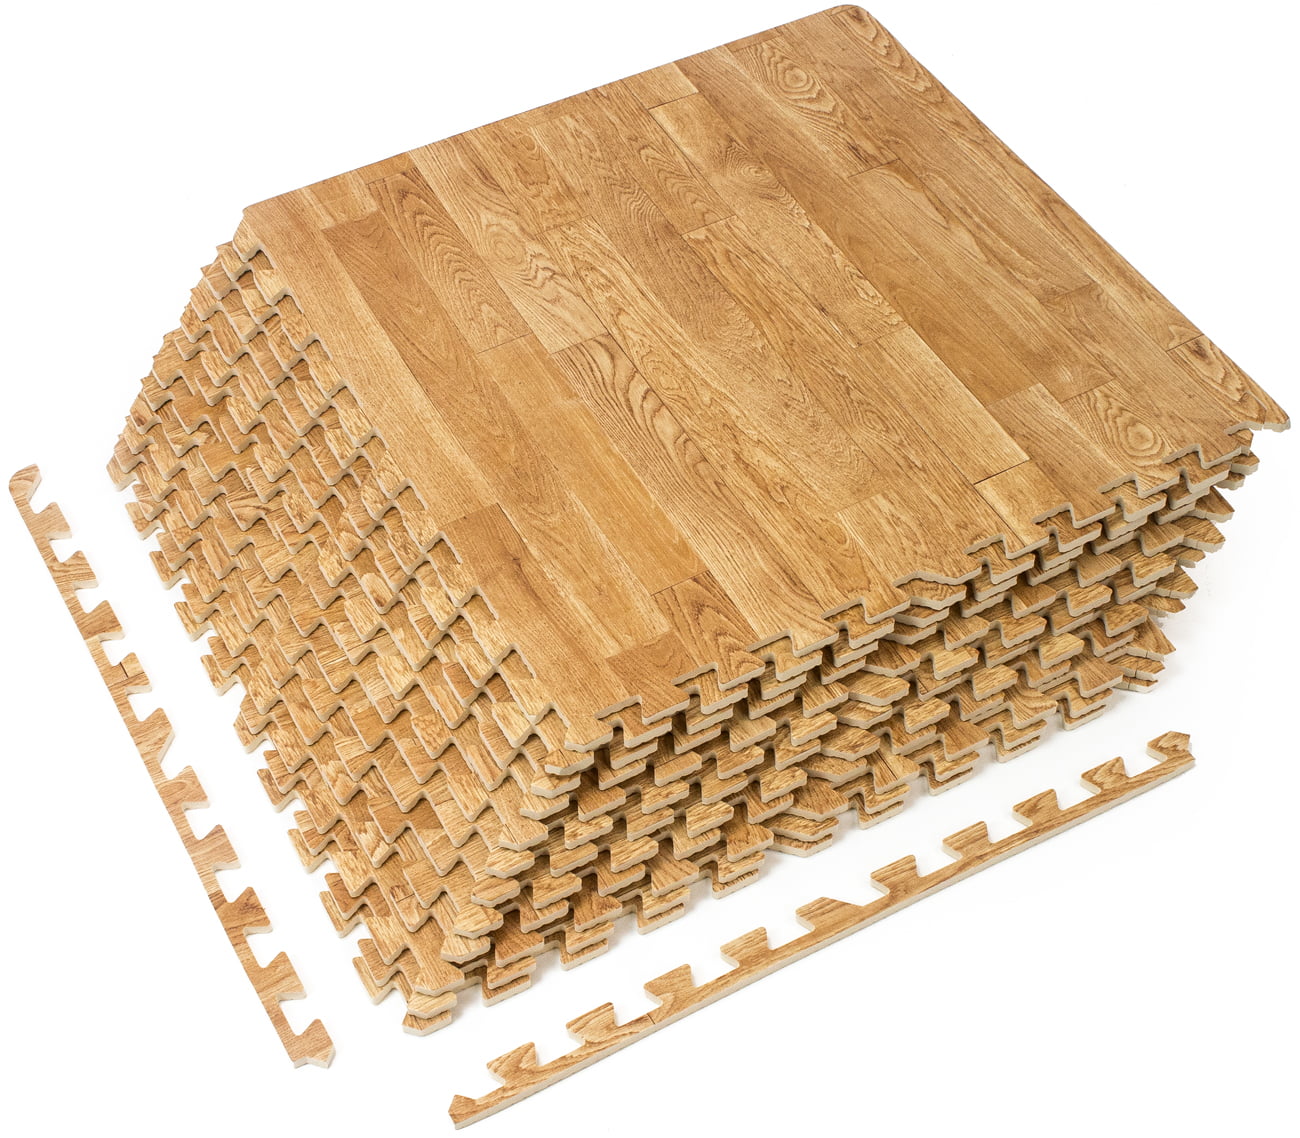 Interlocking Foam Floor Tiles for Basement or Outdoor Party Wood Grain Flooring 